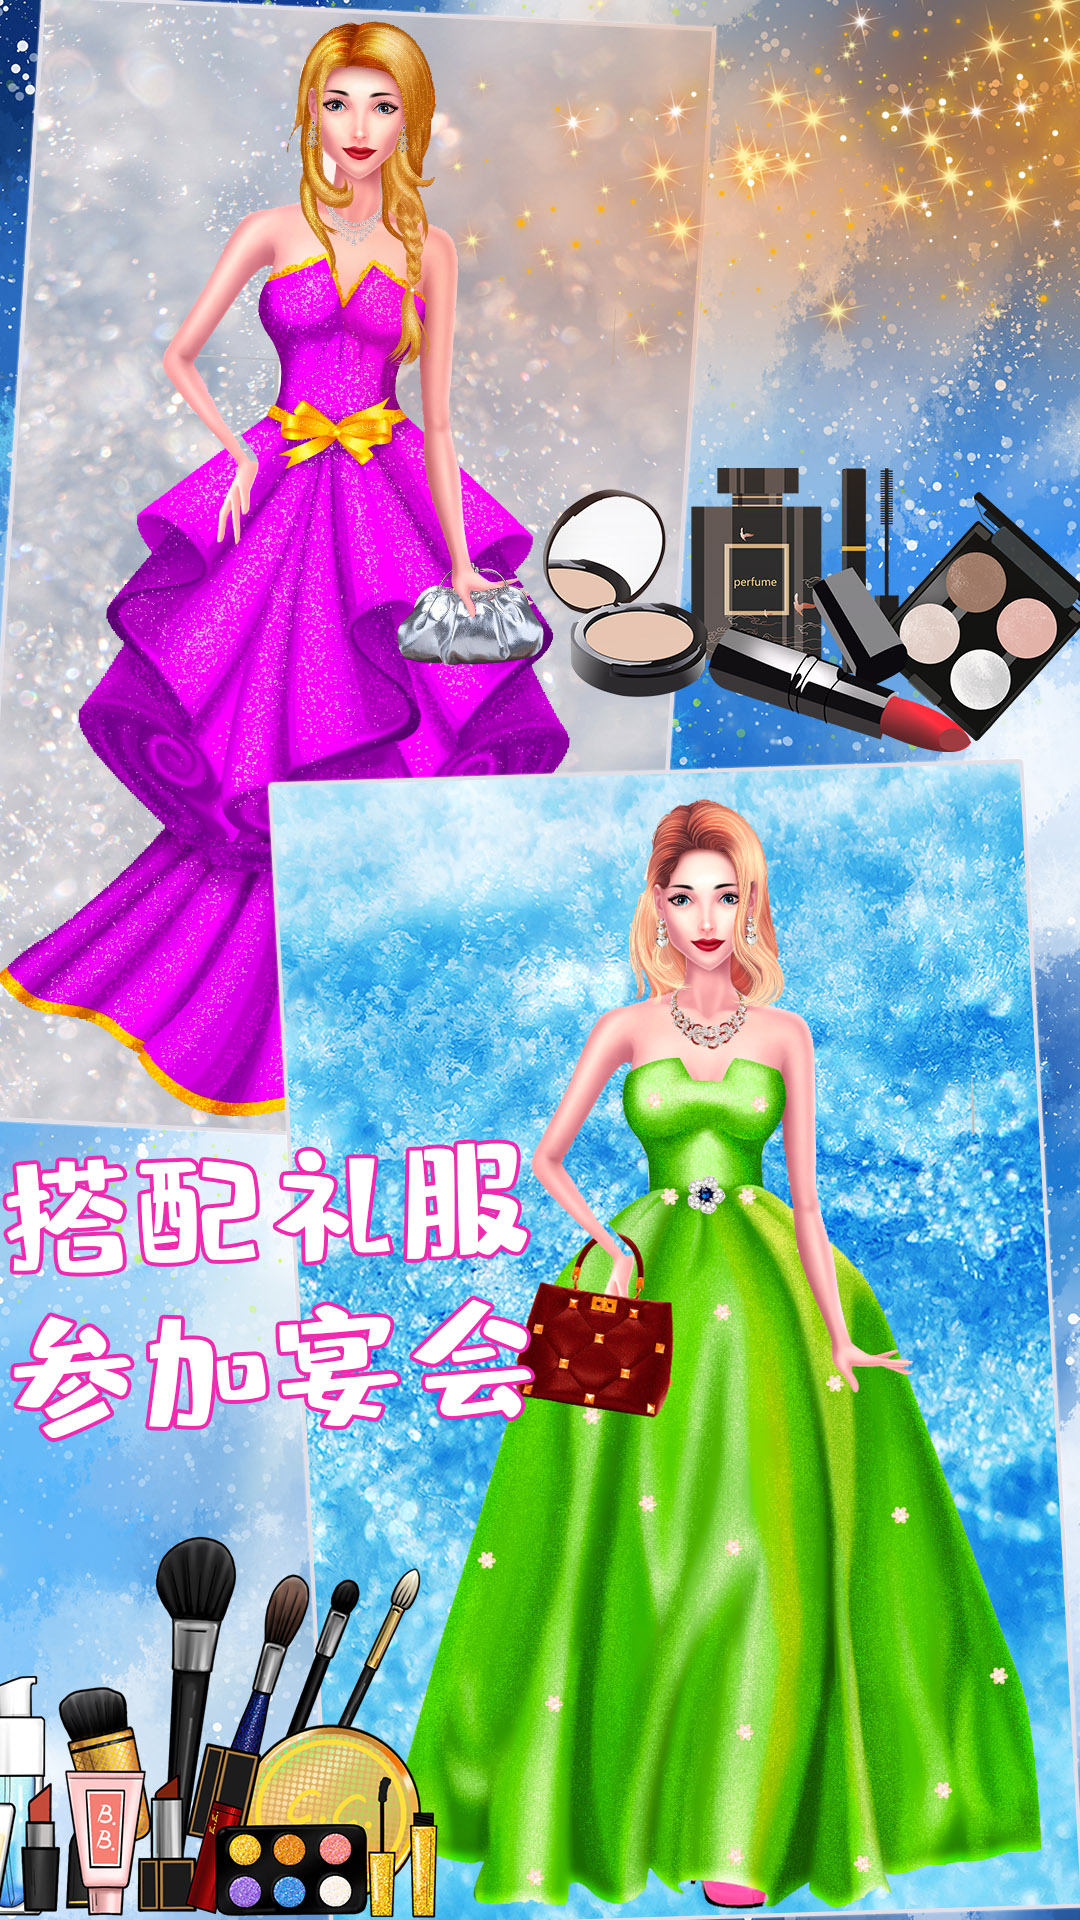 公主婚纱设计-化妆公主游戏v3.1-公主化妆服装设计截图1